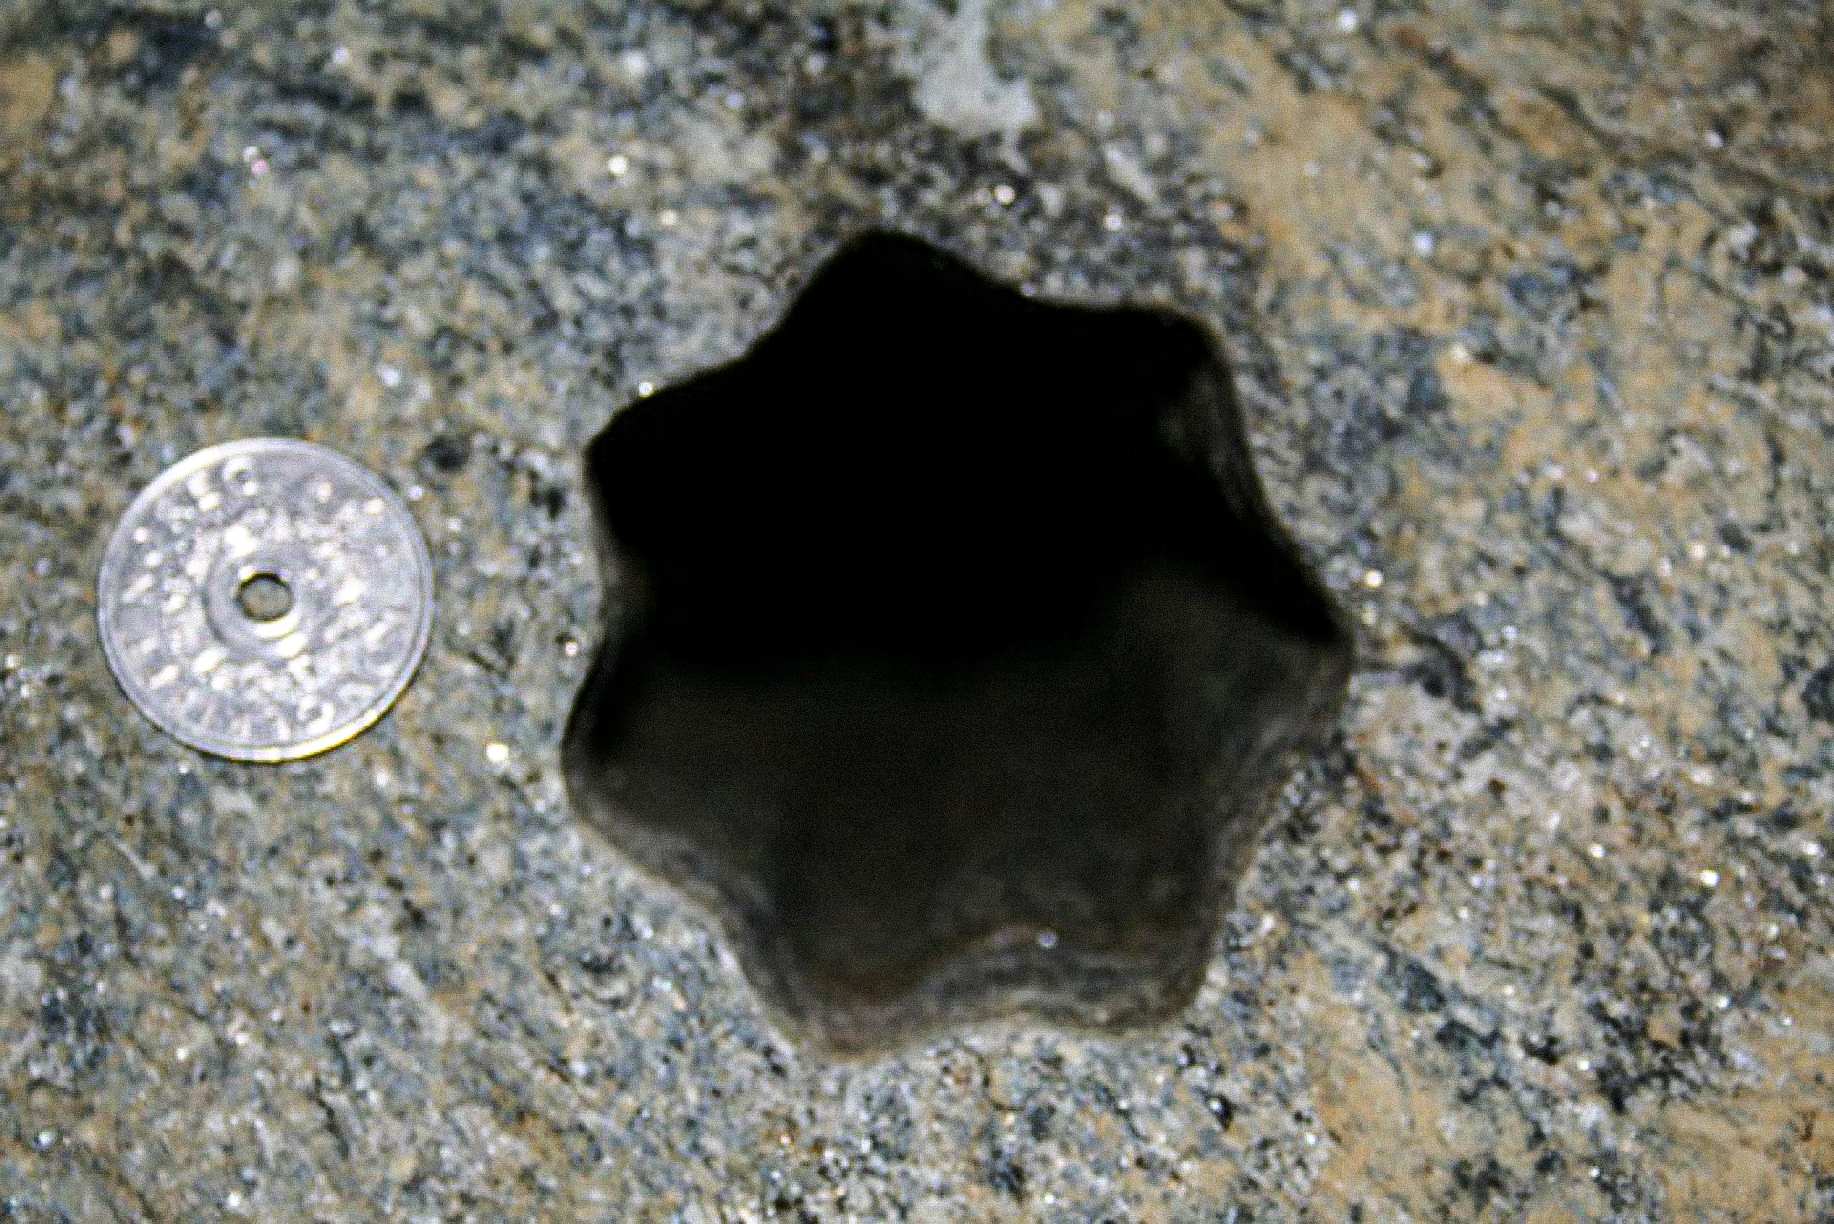 Тази дупка във формата на звезда (със седем страни) беше открита от изпълнители в петък, 30 ноември 2007 г. във Волда, Норвегия. Норвежката монета от 5 крони е с диаметър 25 mm. Отворът е с диаметър около 65 - 70 mm.